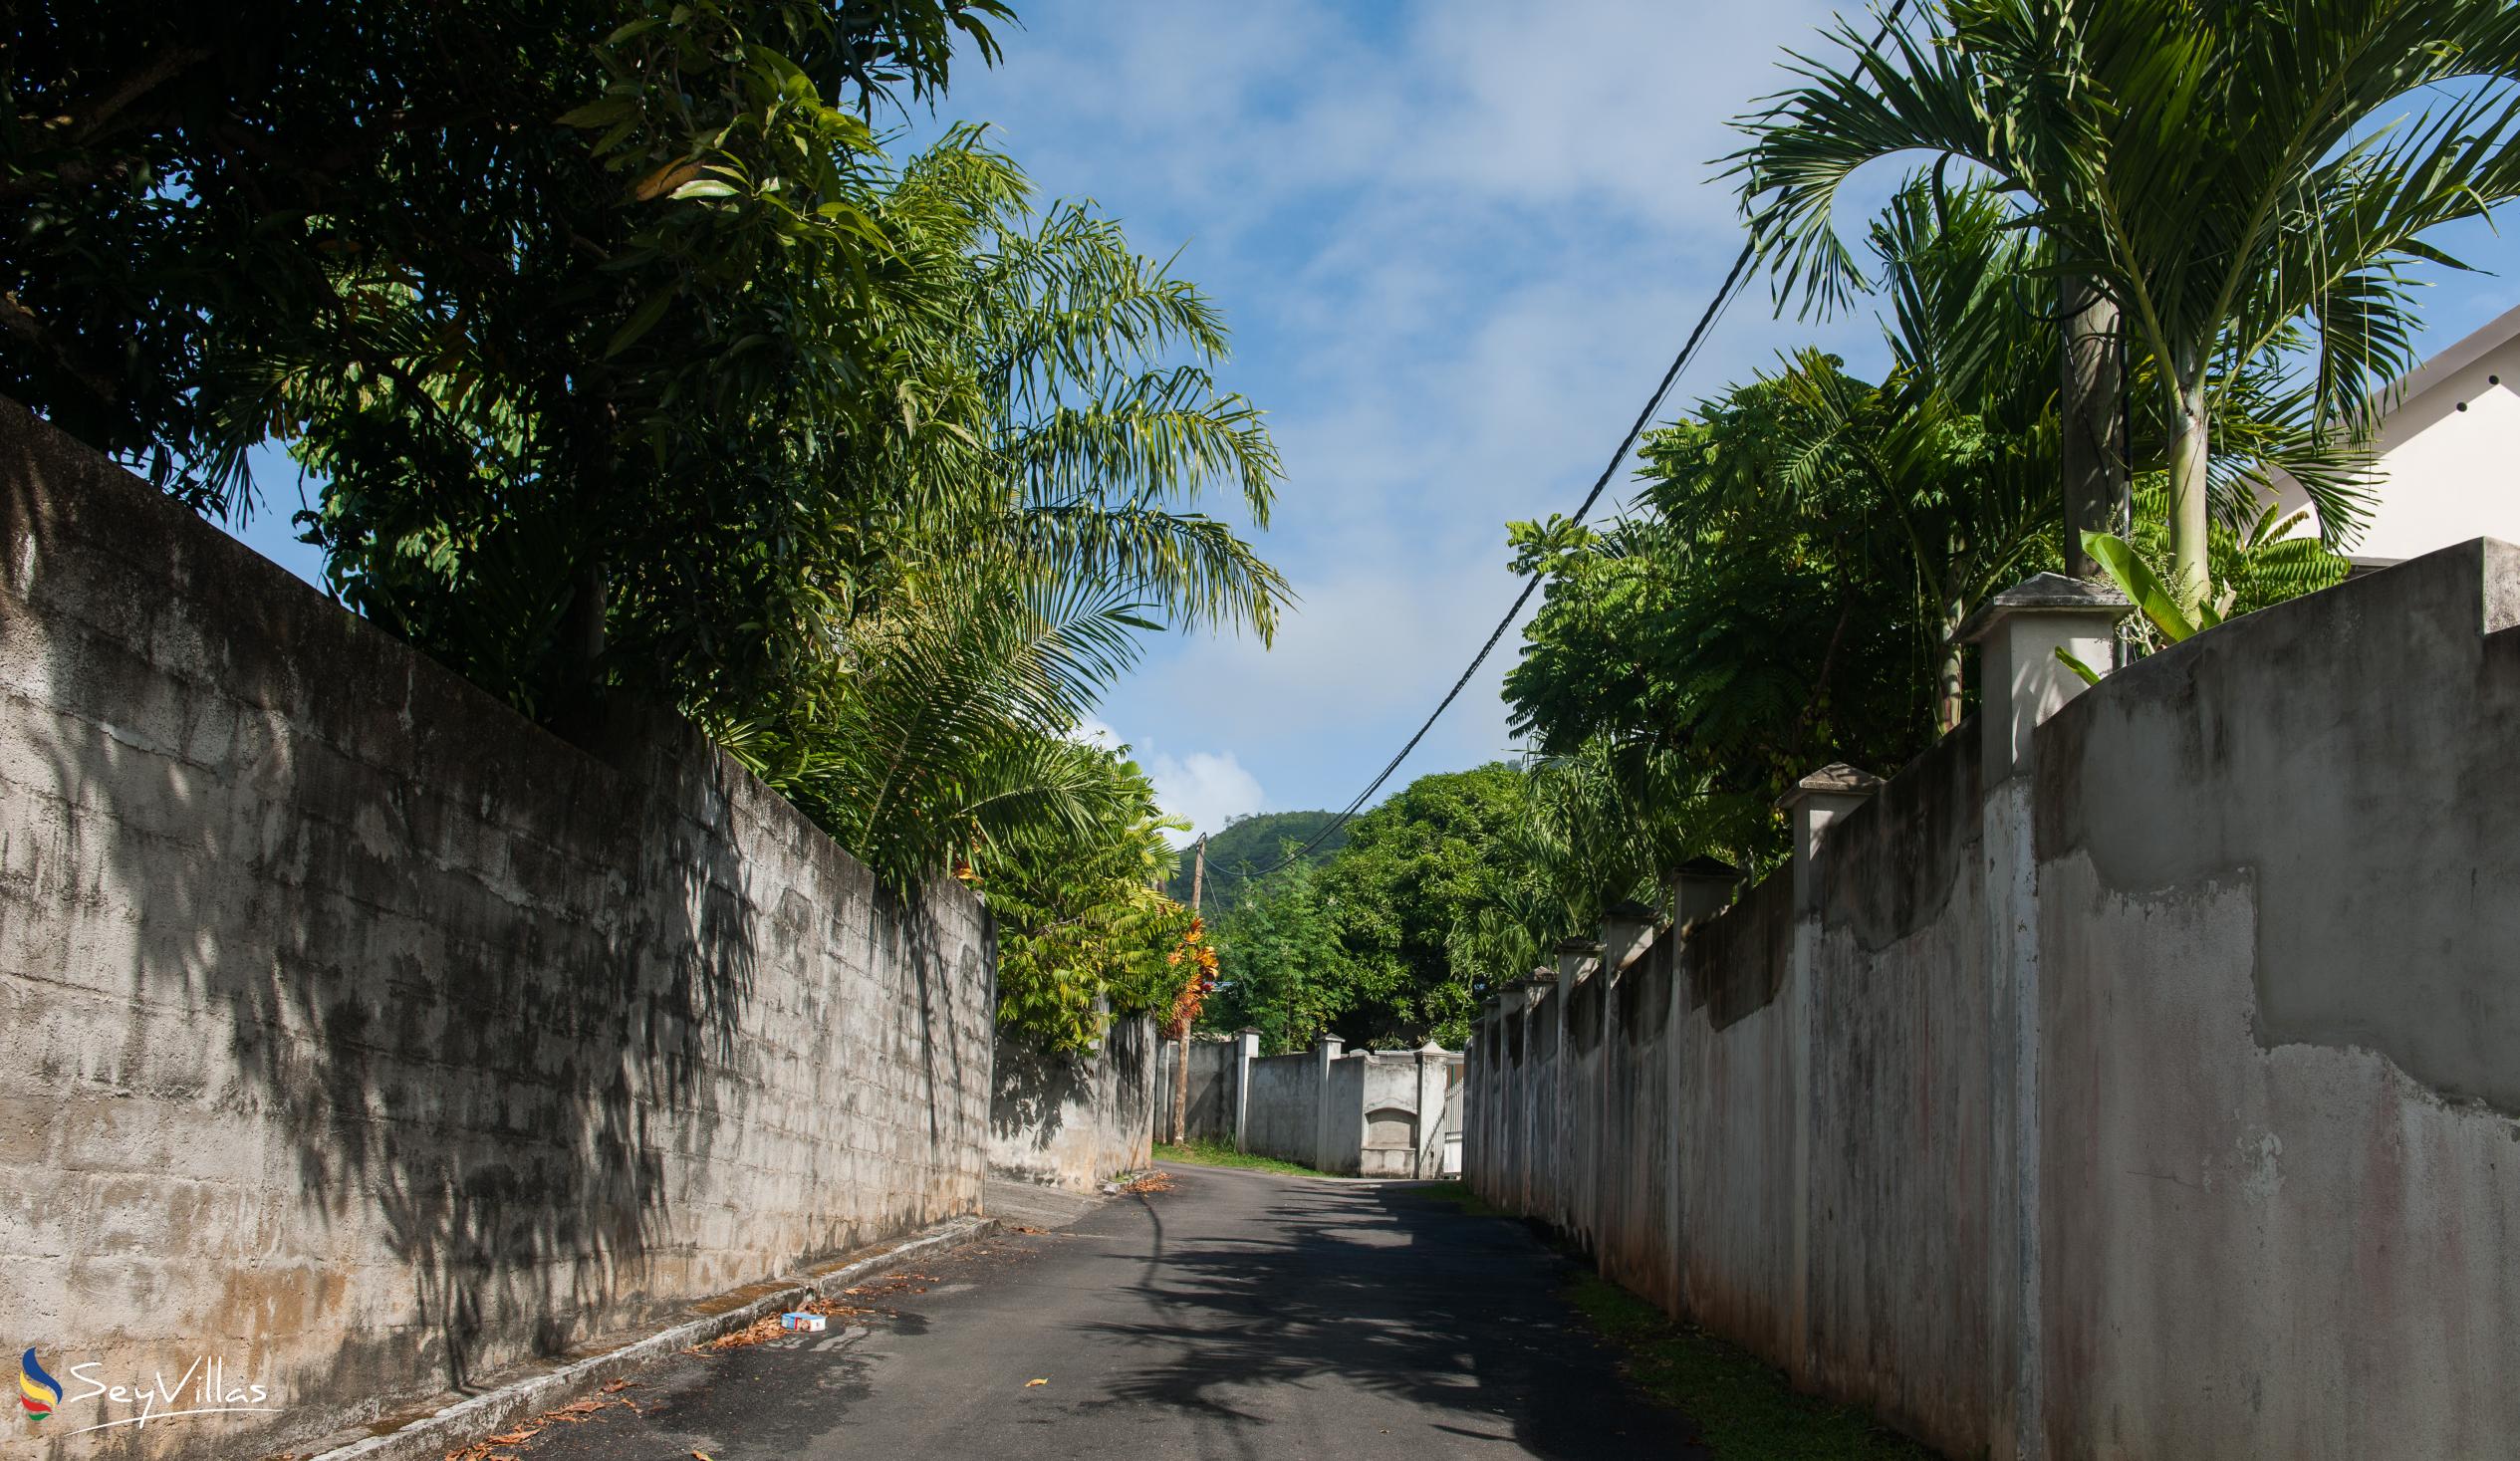 Foto 36: Le Domaine de Bacova - Lage - Mahé (Seychellen)